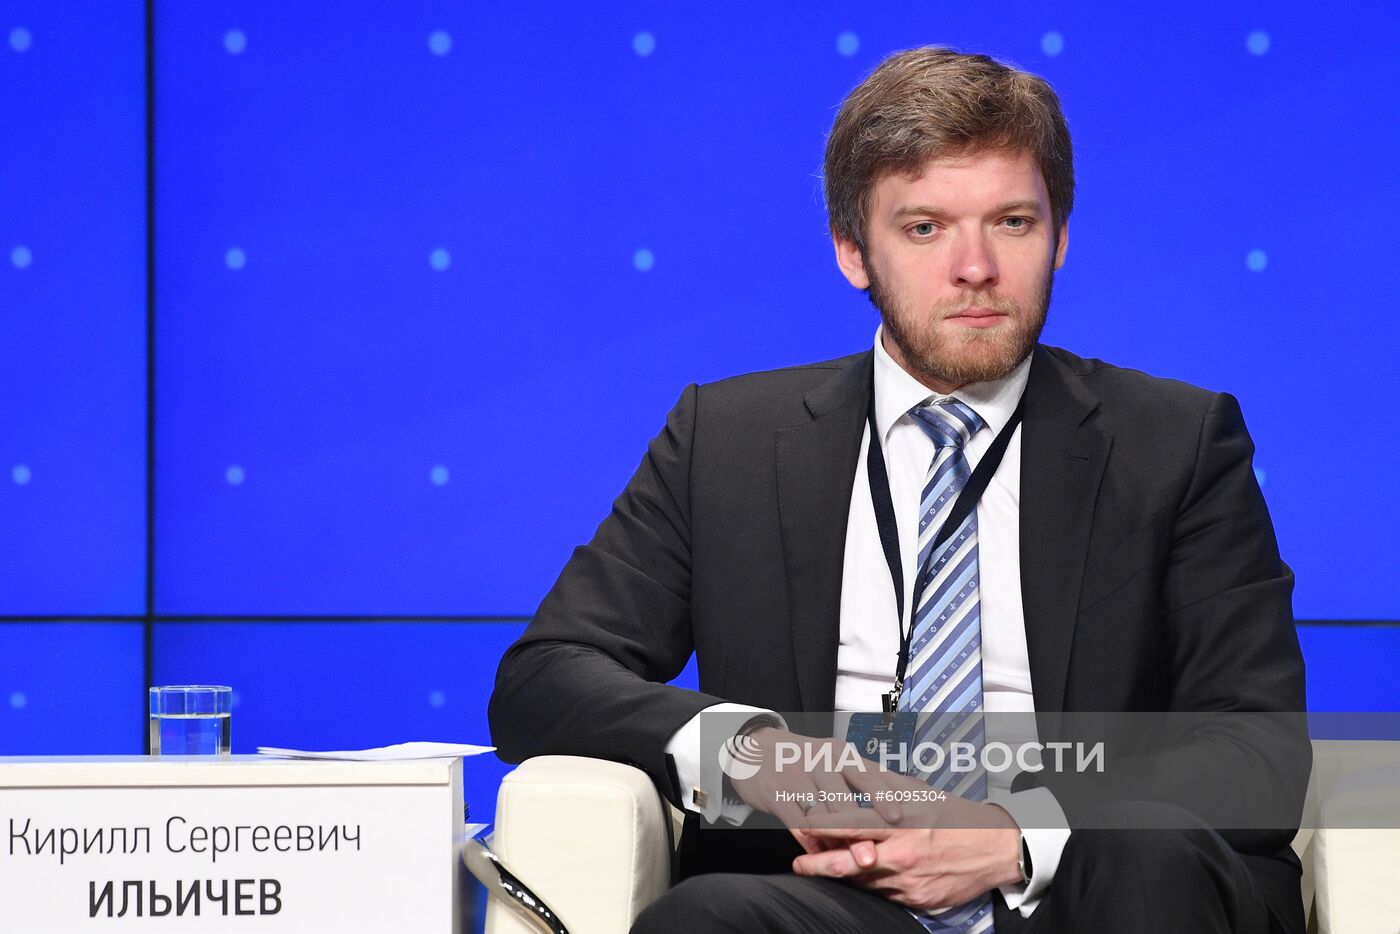 Форум "VI Евразийский экономический конгресс"